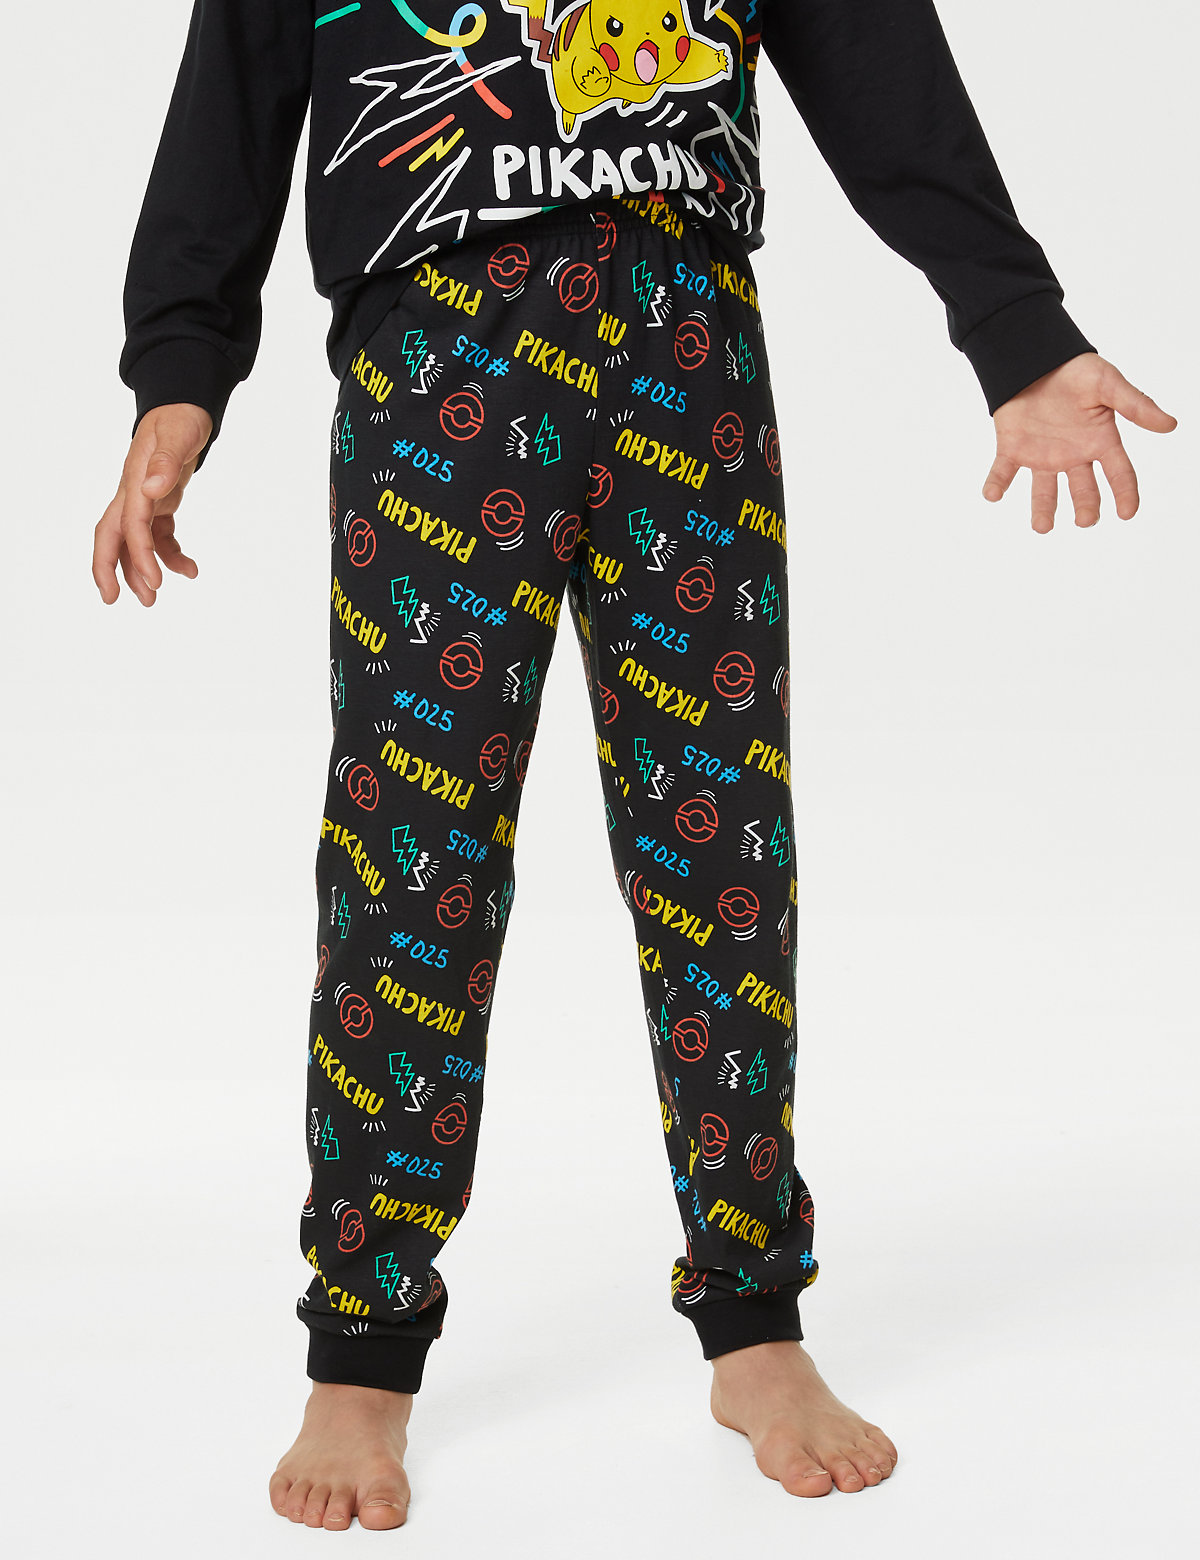 Pokémon™ Pyjamas (6-16 Yrs)